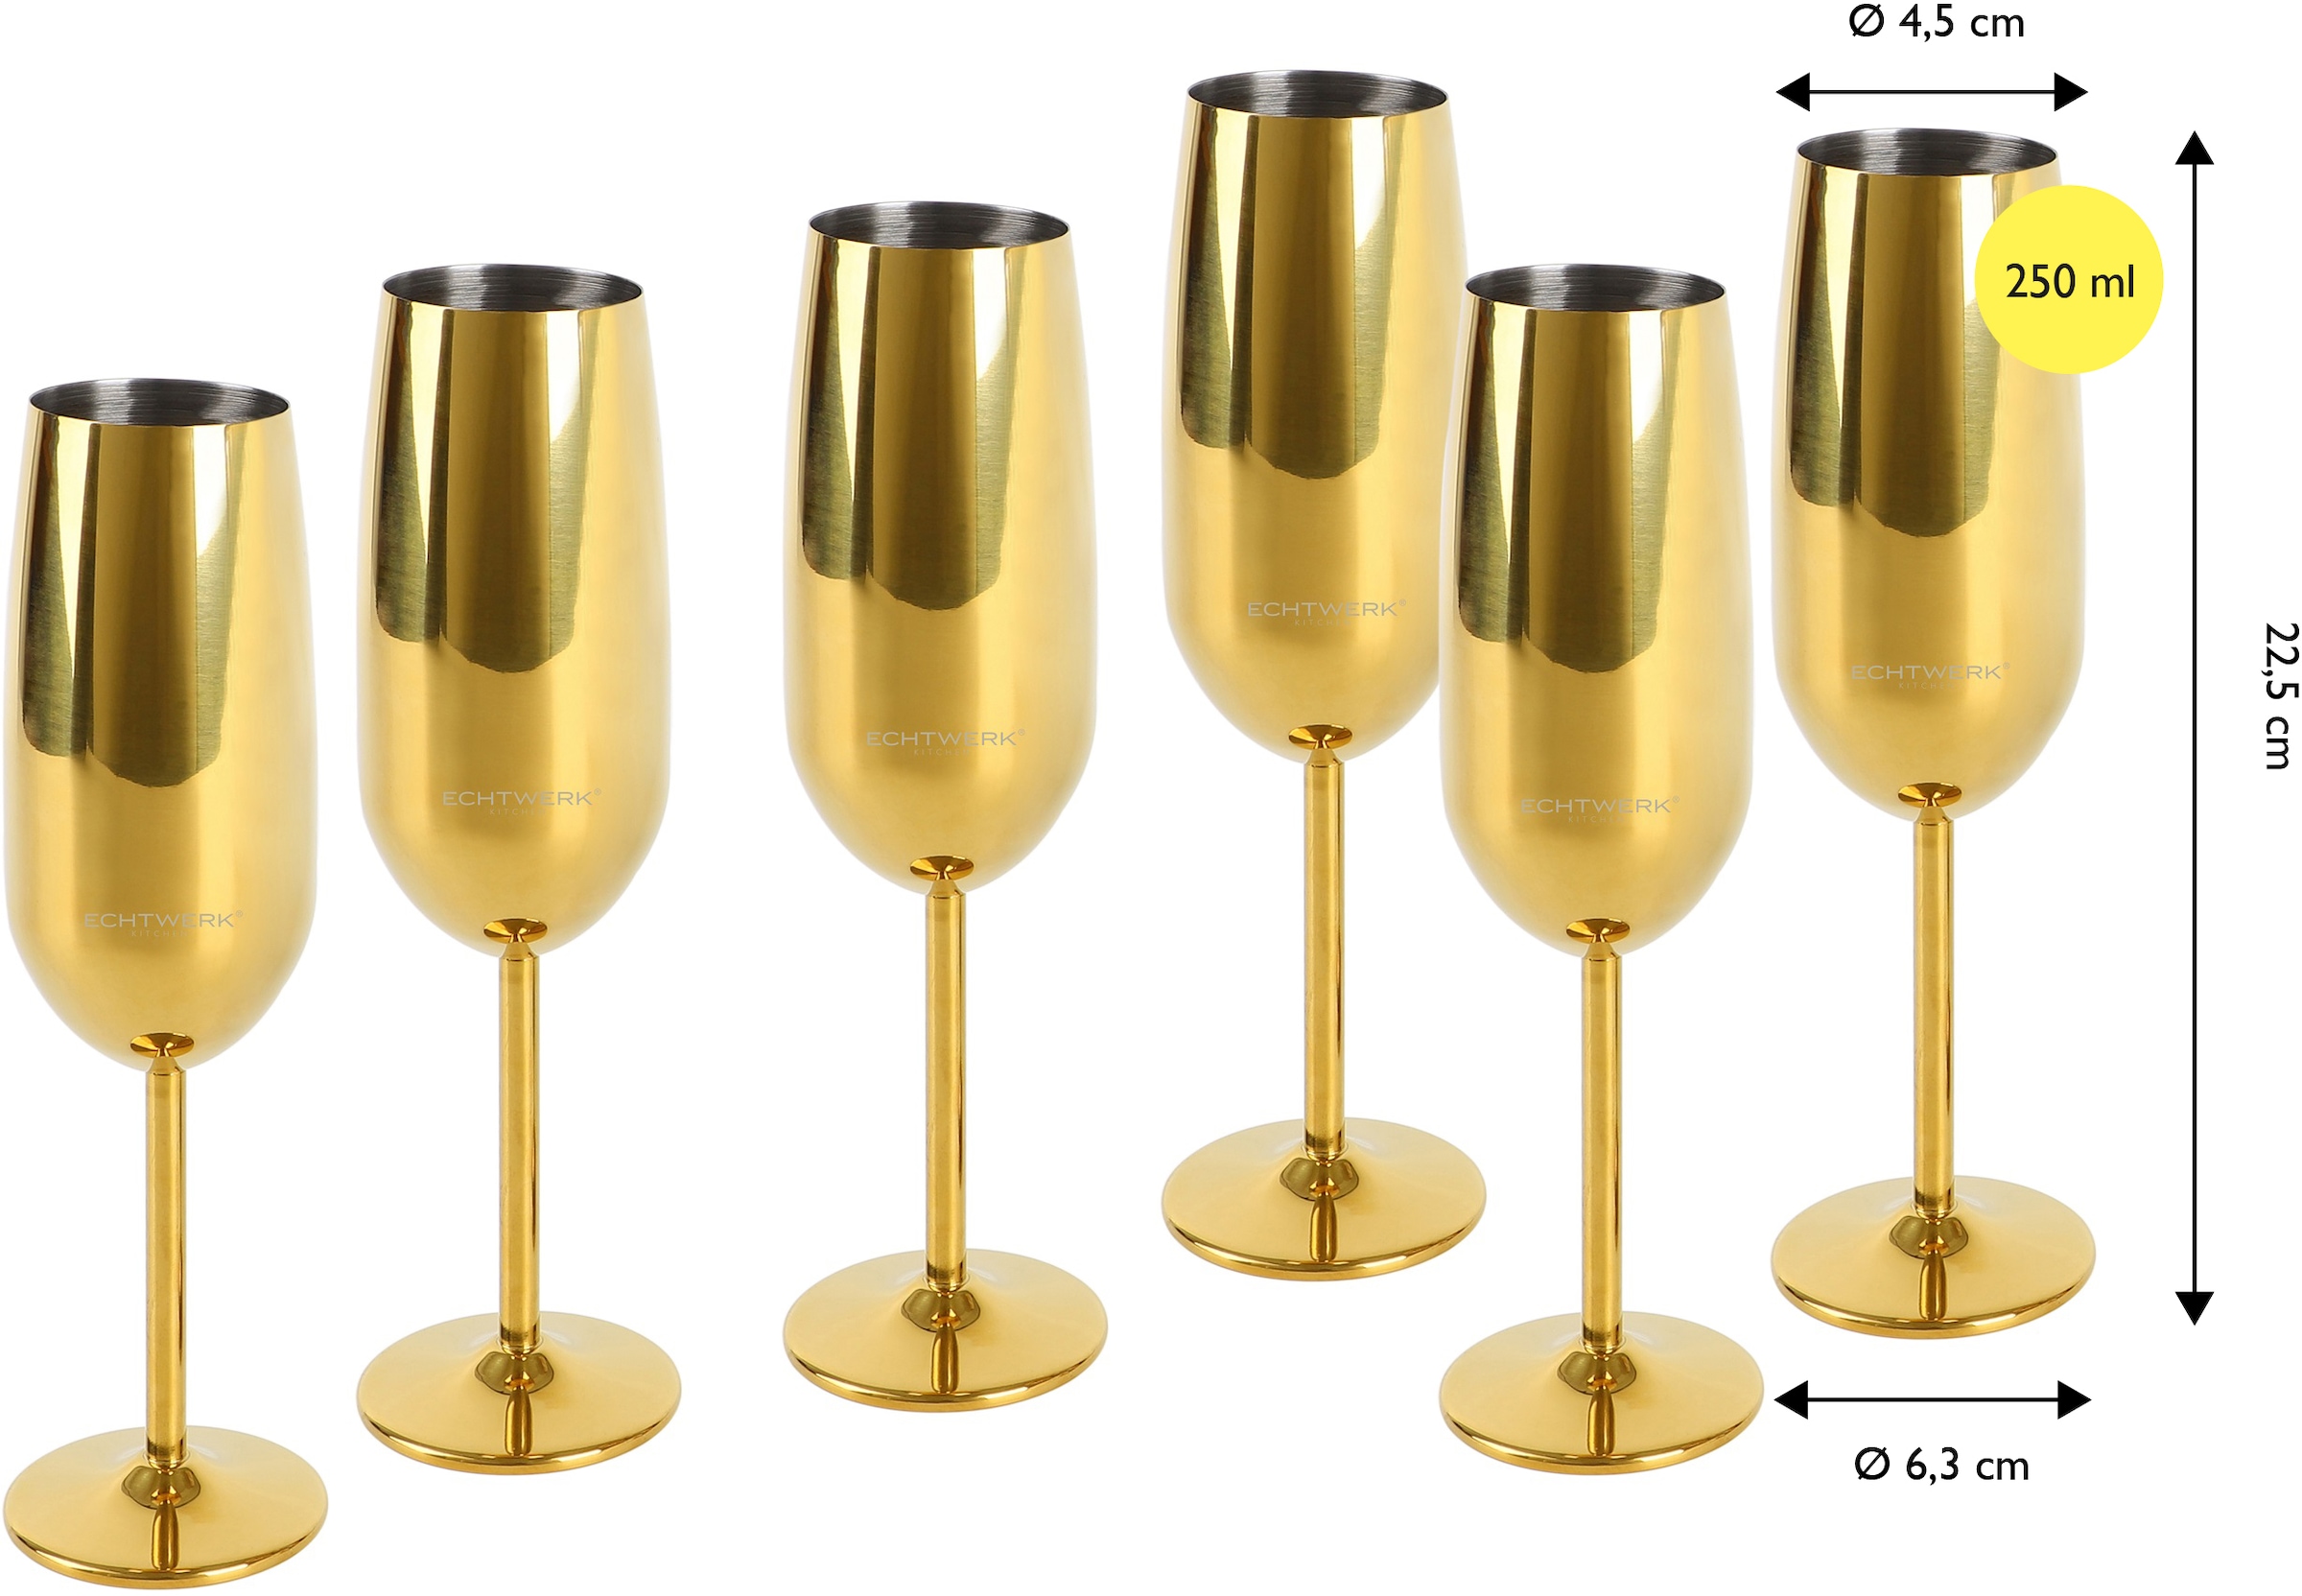 ECHTWERK Champagnerglas, (Set, 6 tlg.), Sektglas, Sektkelch, Champagnerkelch, bruchsicher, 250 ml